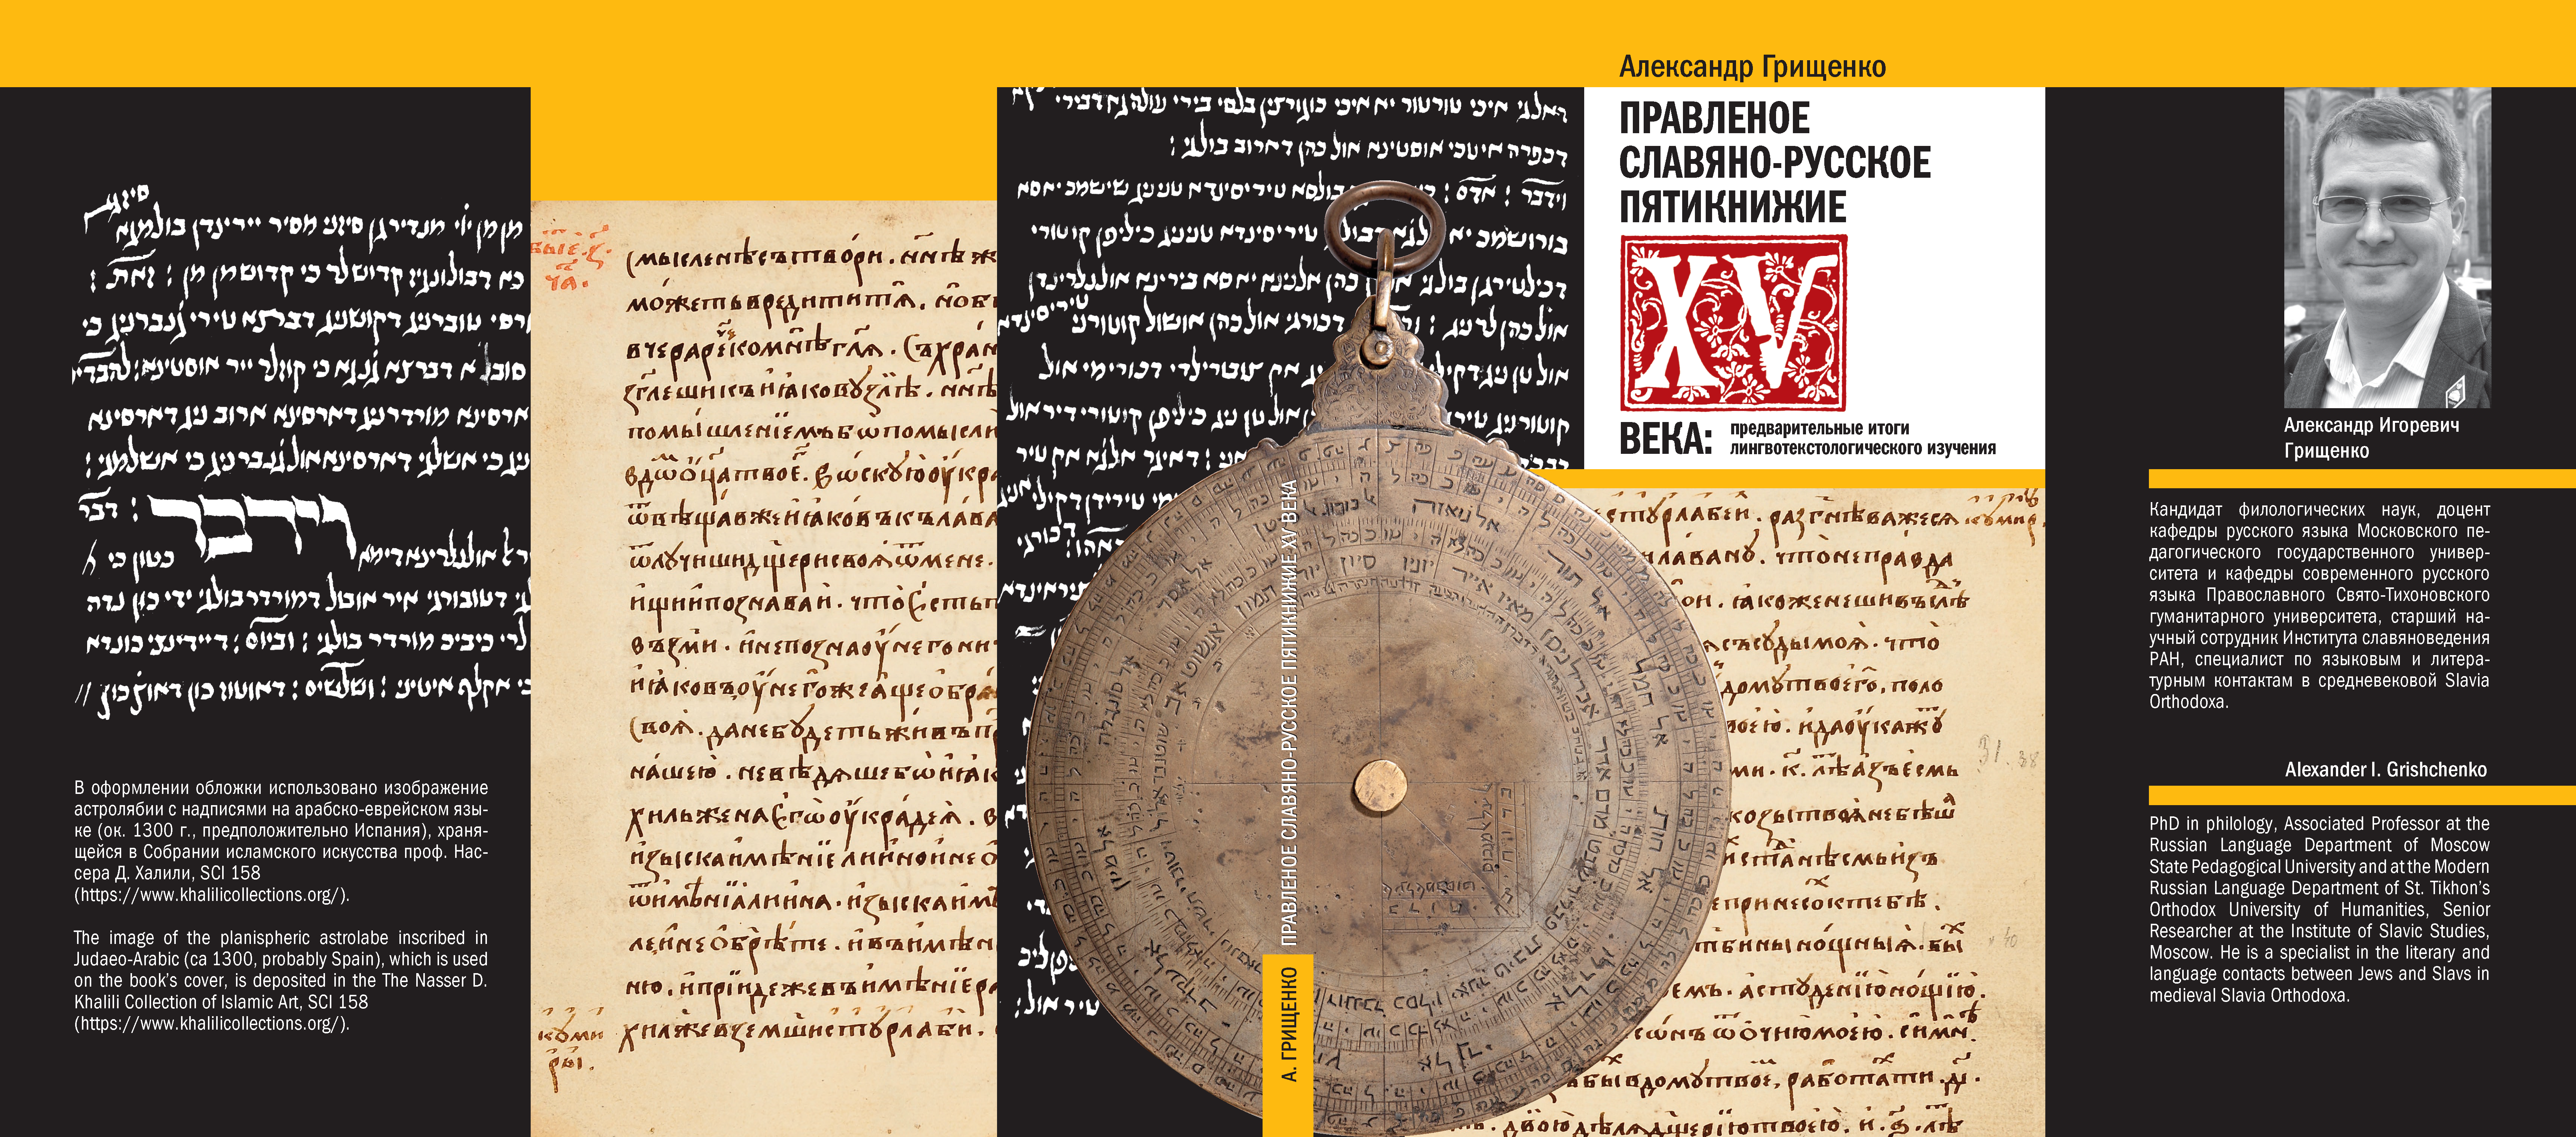 Правленое славяно-русское Пятикнижие XV века: предварительные итоги лингвотекстологического изучения